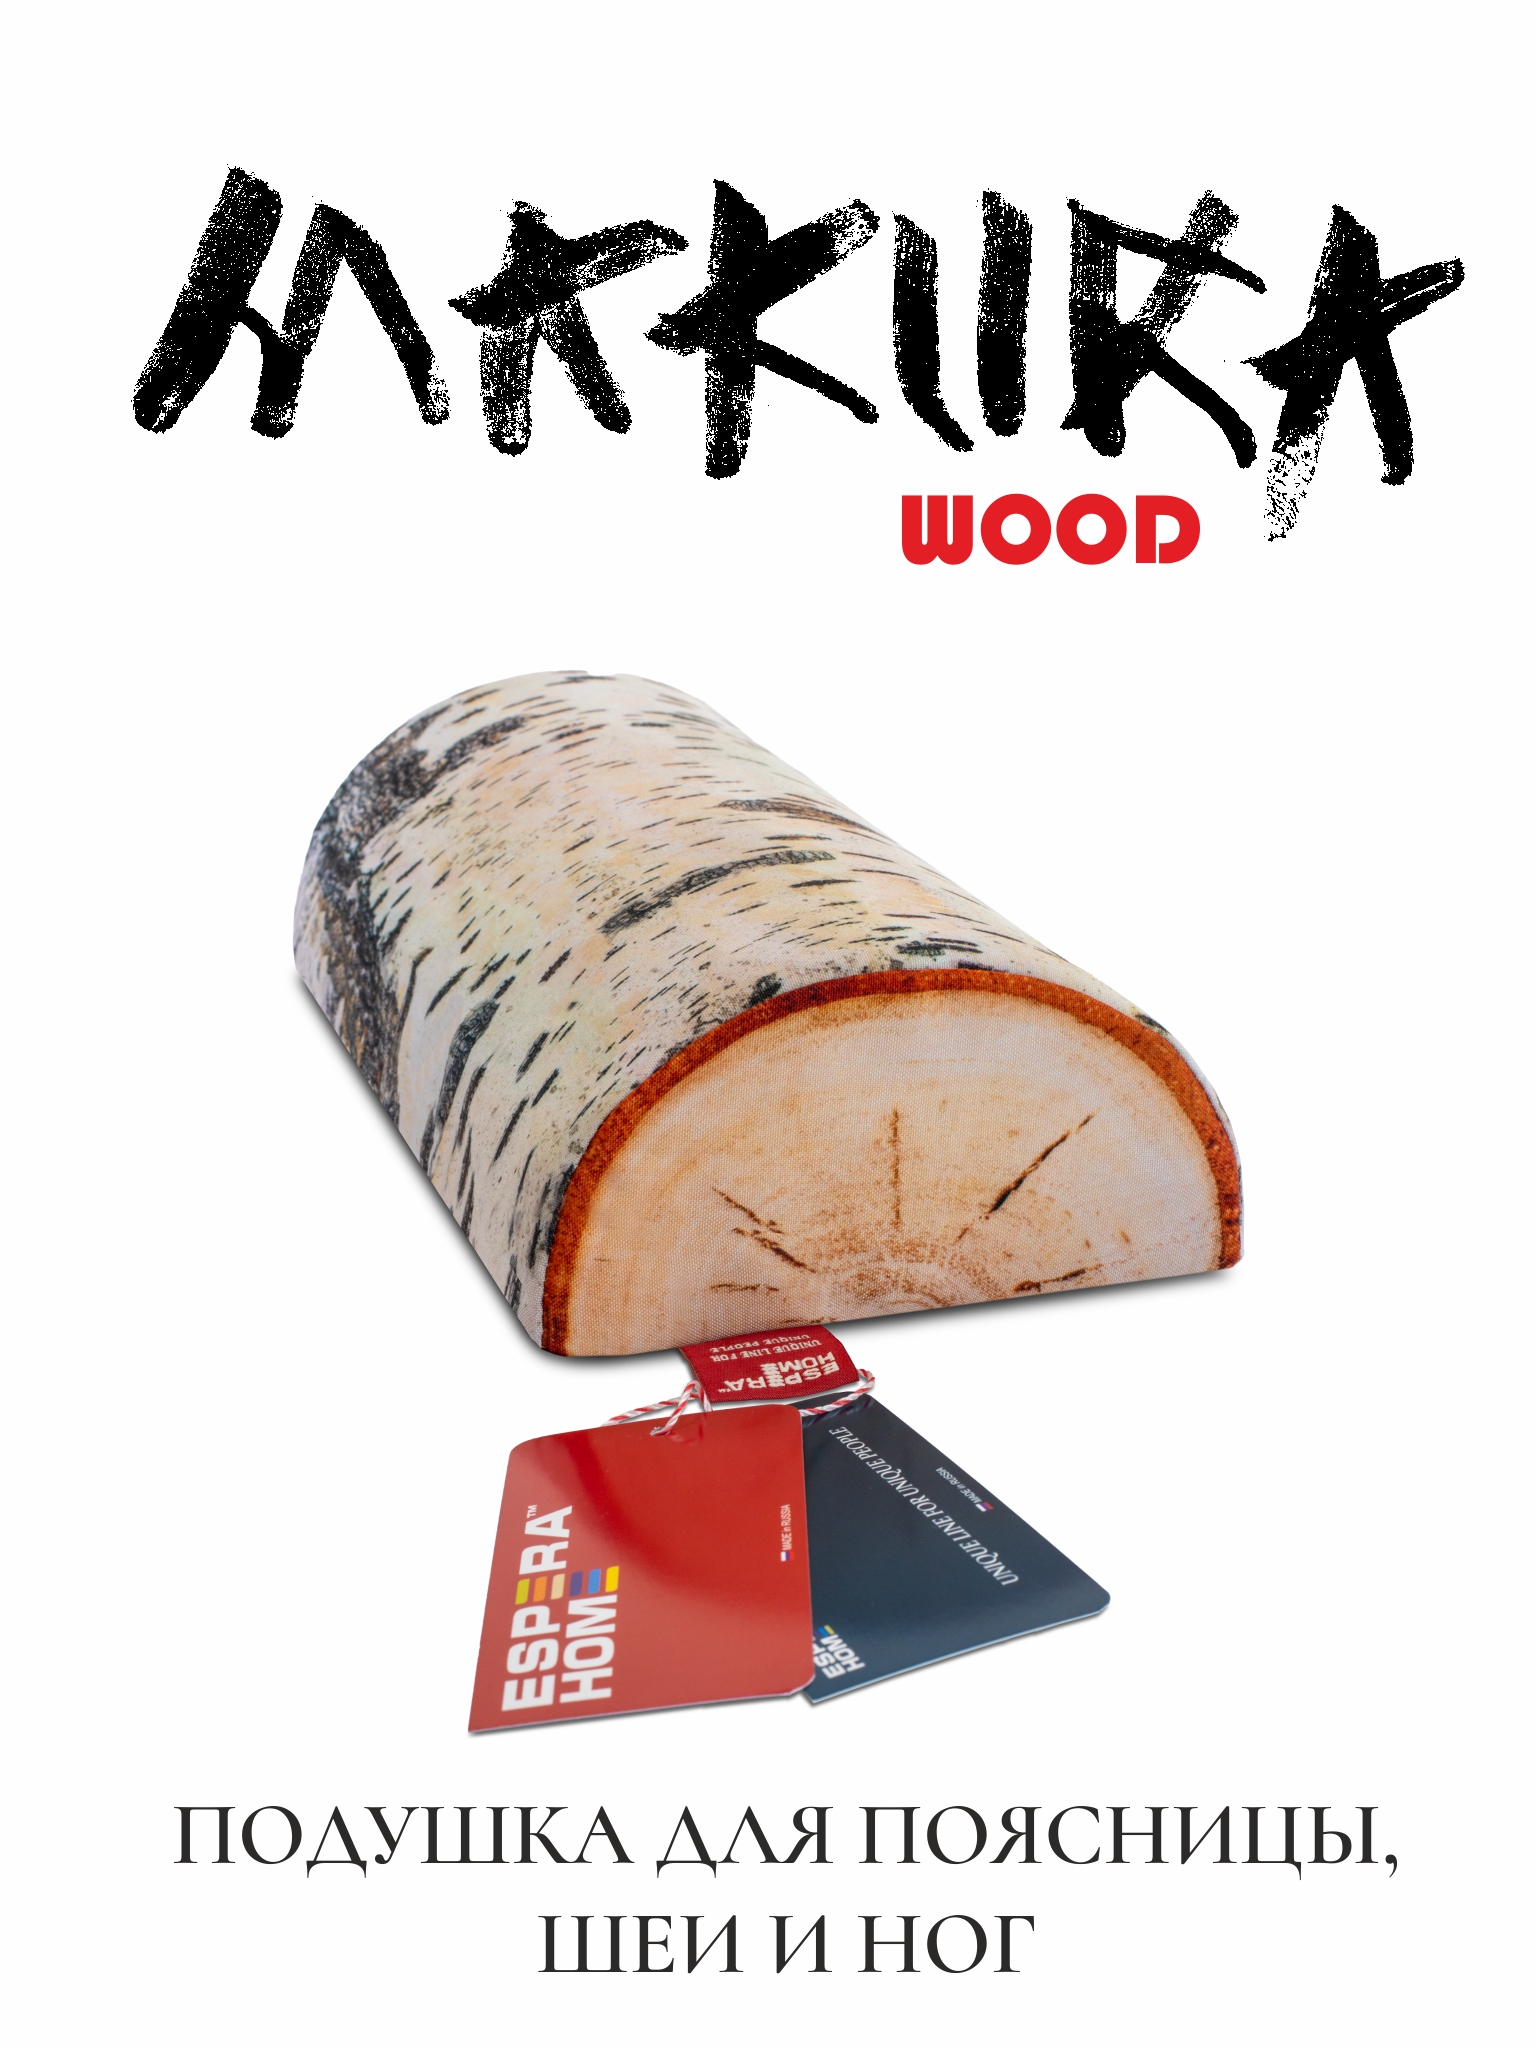 Подушка для спины, поясницы и шеи • Espera Makura Wood /  Эспера Макура Вуд •  15х30 см